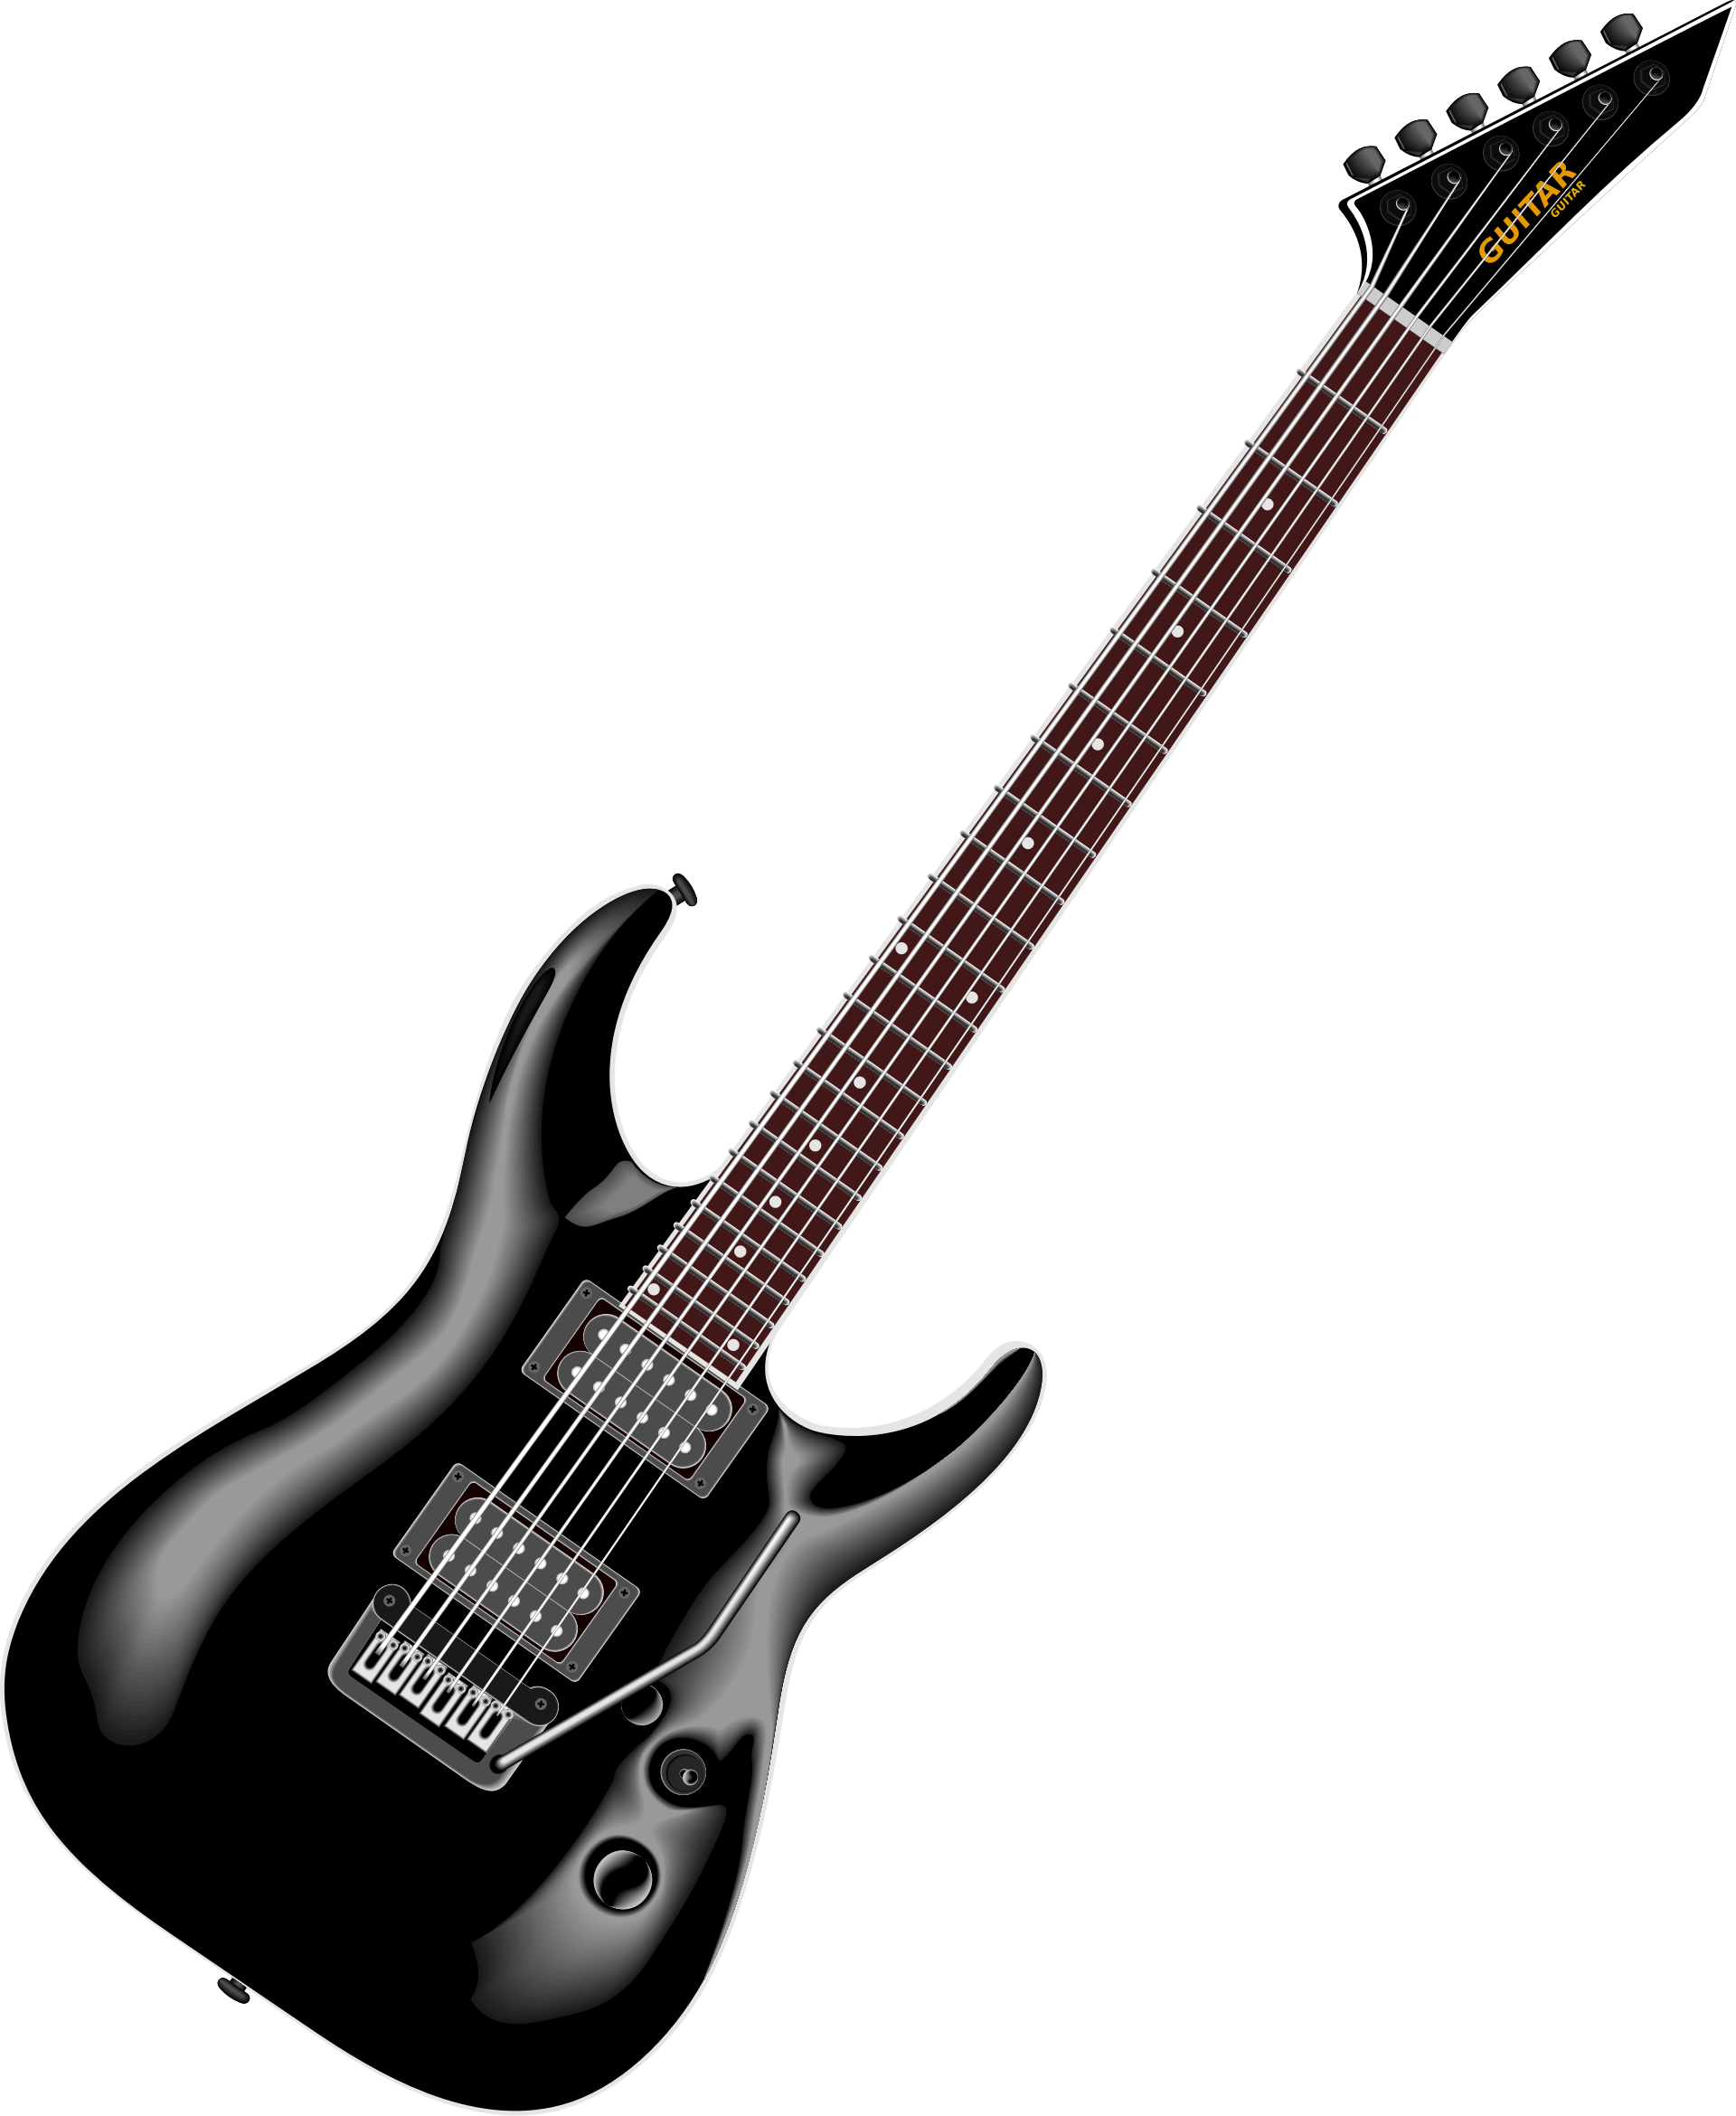 Guitarra eléctrica PNG imagen de alta calidad